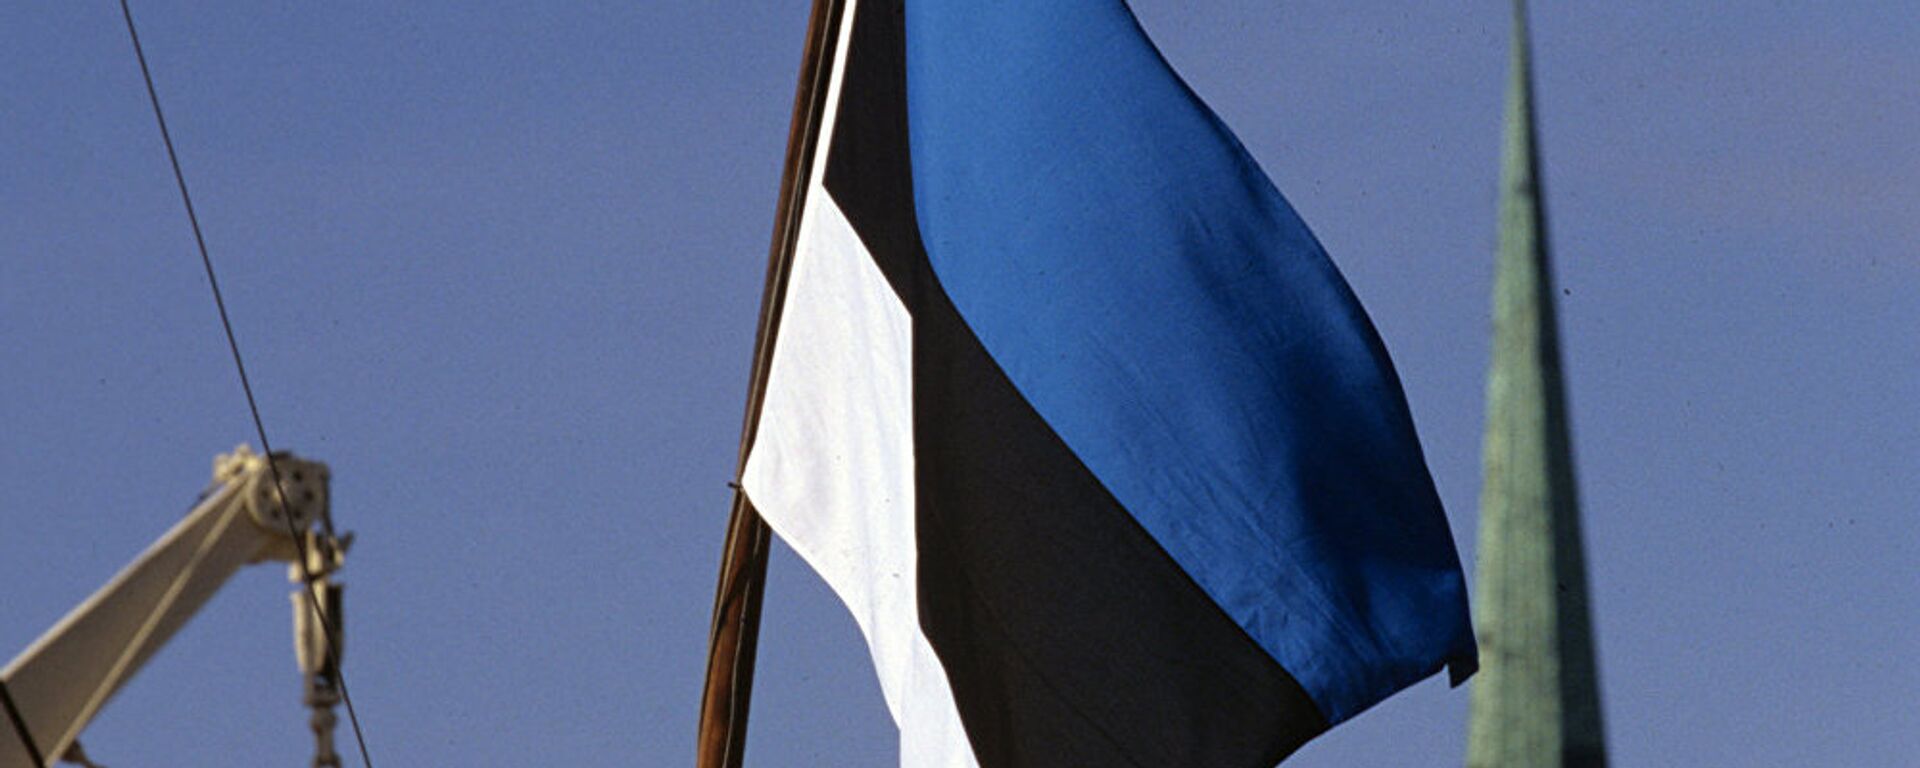 Государственный флаг Эстонии - Sputnik Латвия, 1920, 02.01.2020